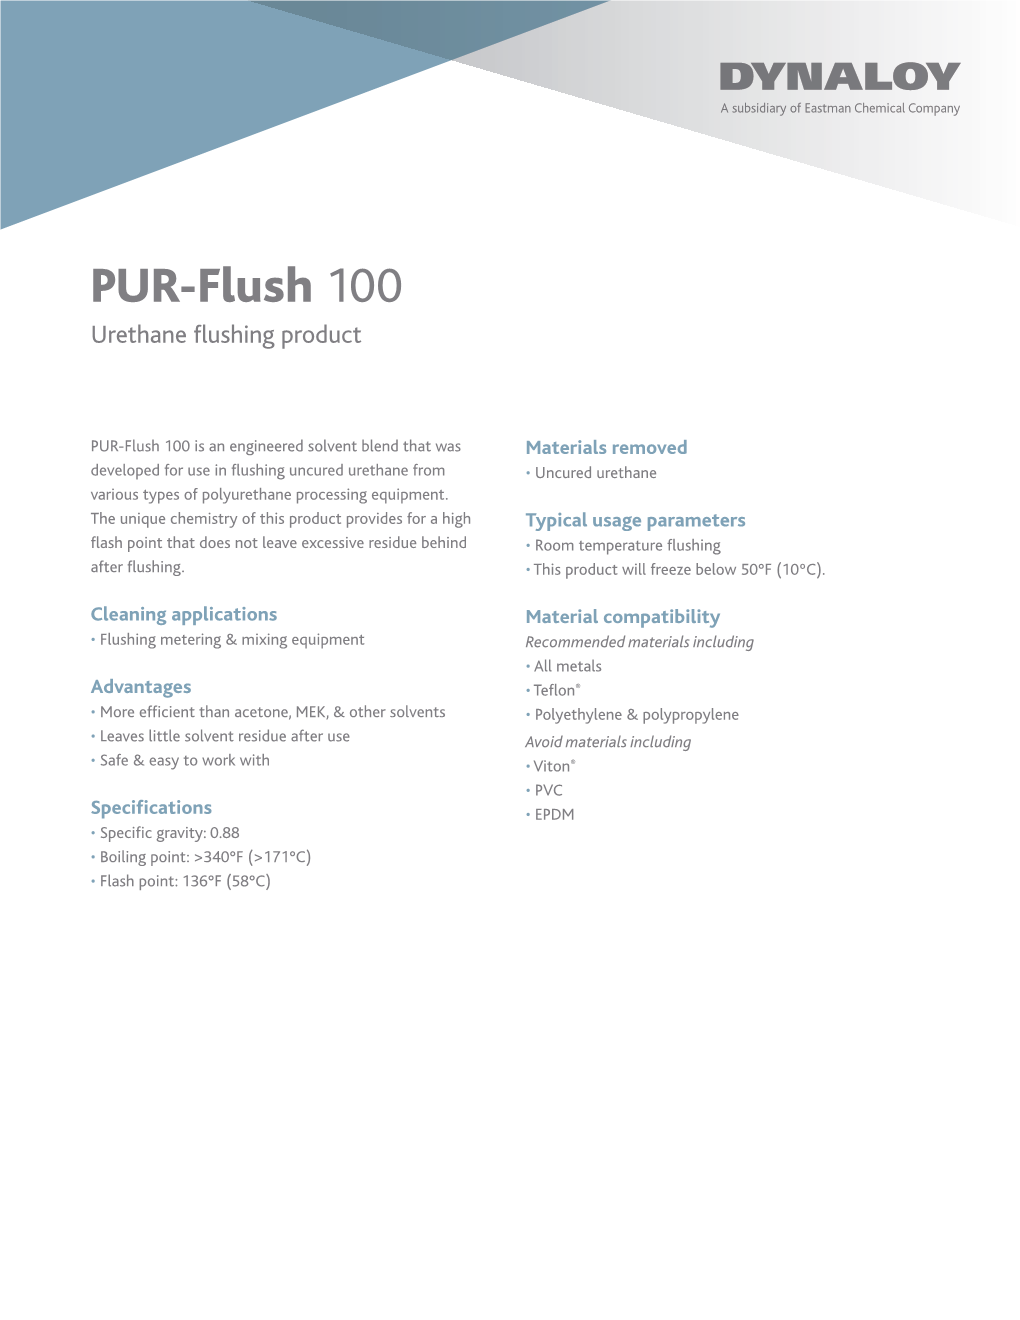 PUR-Flush 100 Urethane Flushing Product